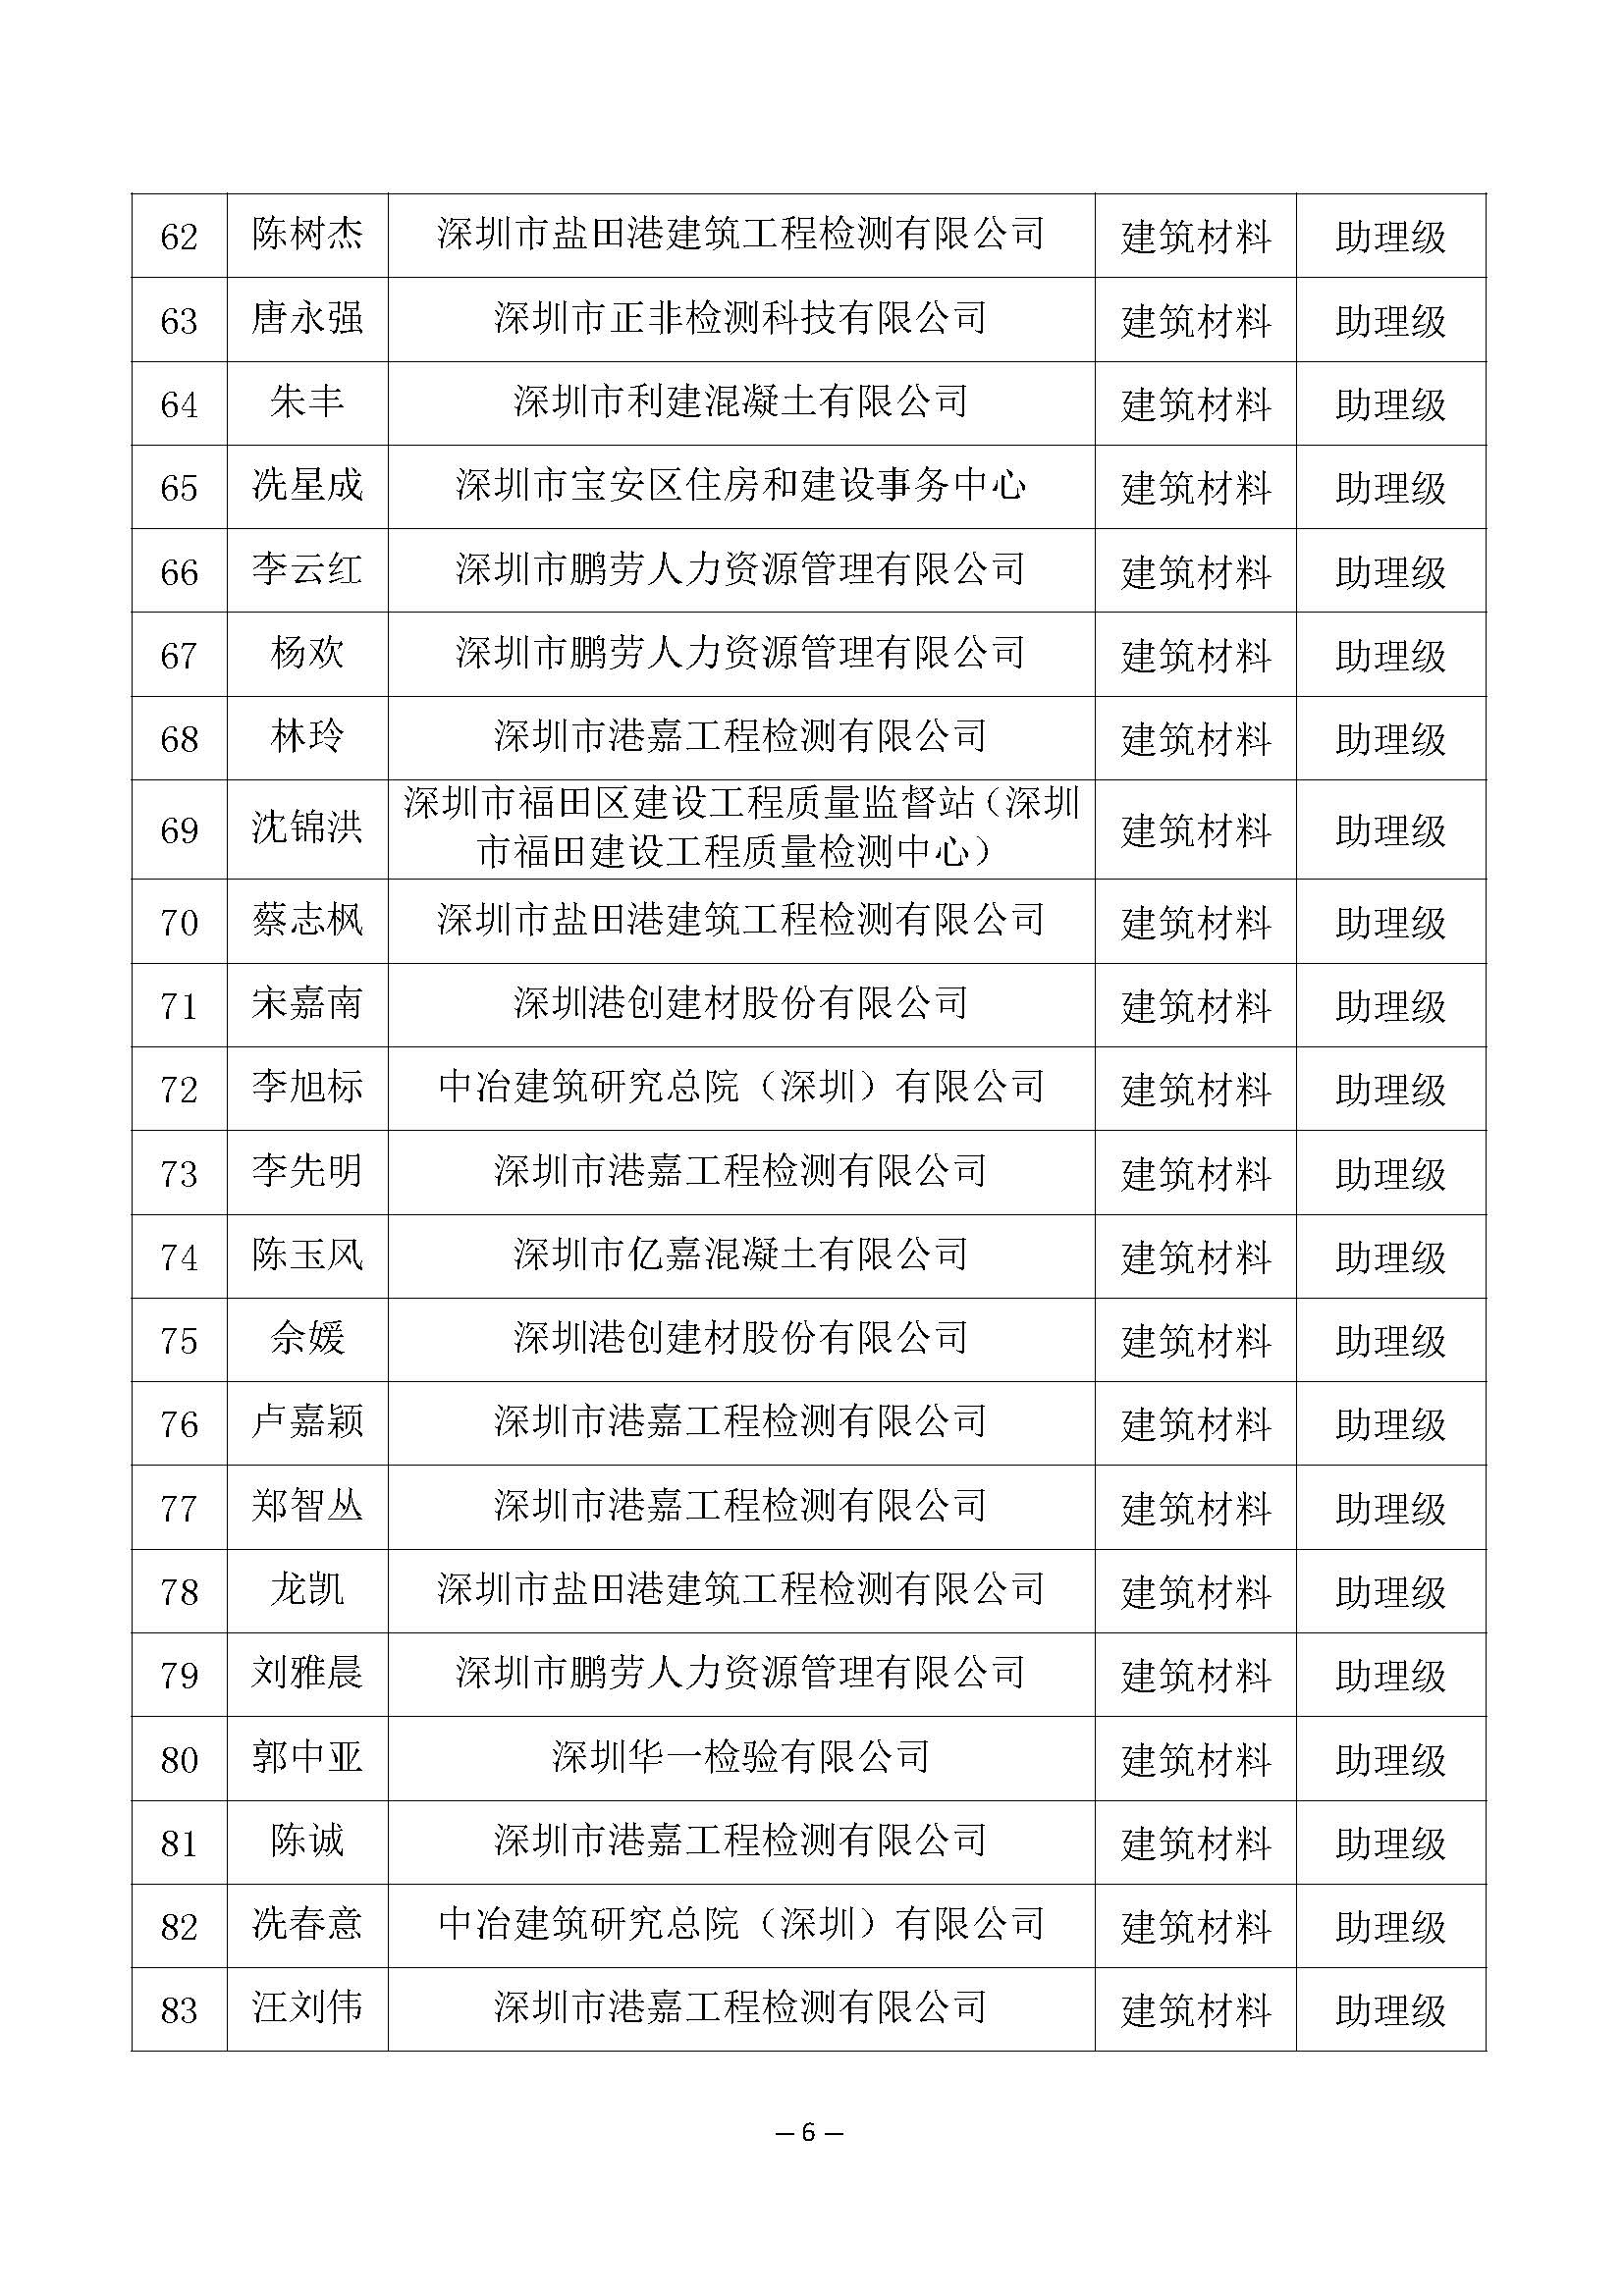 2021年度深圳市建筑材料专业高级职称评审委员会建筑材料专业高、中、初级职称评审通过人员公示_页面_6.jpg